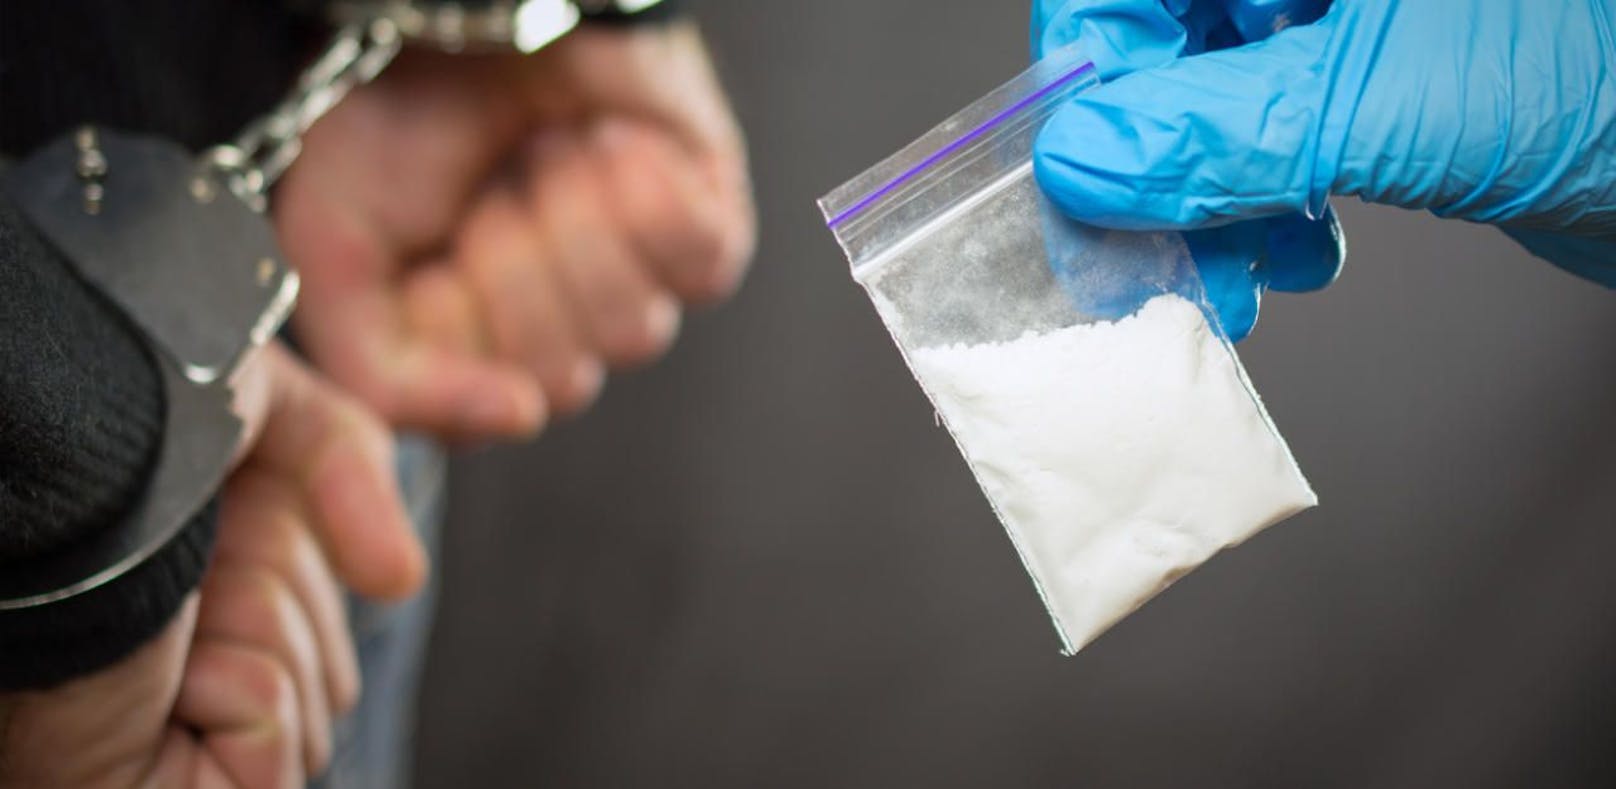 Dealer verkauften Drogen sogar an 13-Jährige